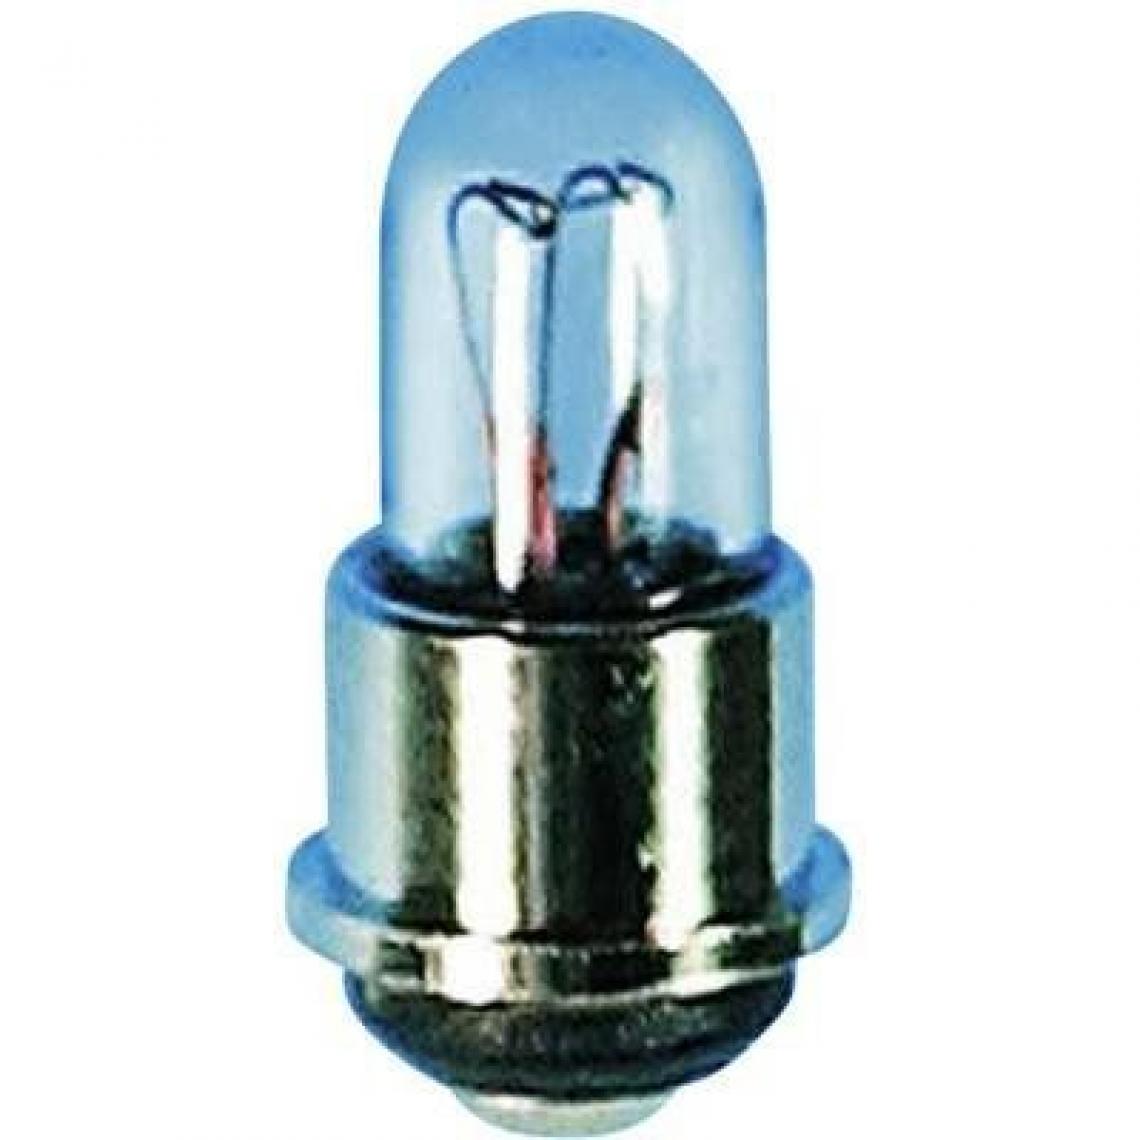 Inconnu - Ampoule incandescente subminiature TRU COMPONENTS 1590391 28 V 0.67 W SM4s/4 clair 1 pc(s) - Ampoules LED